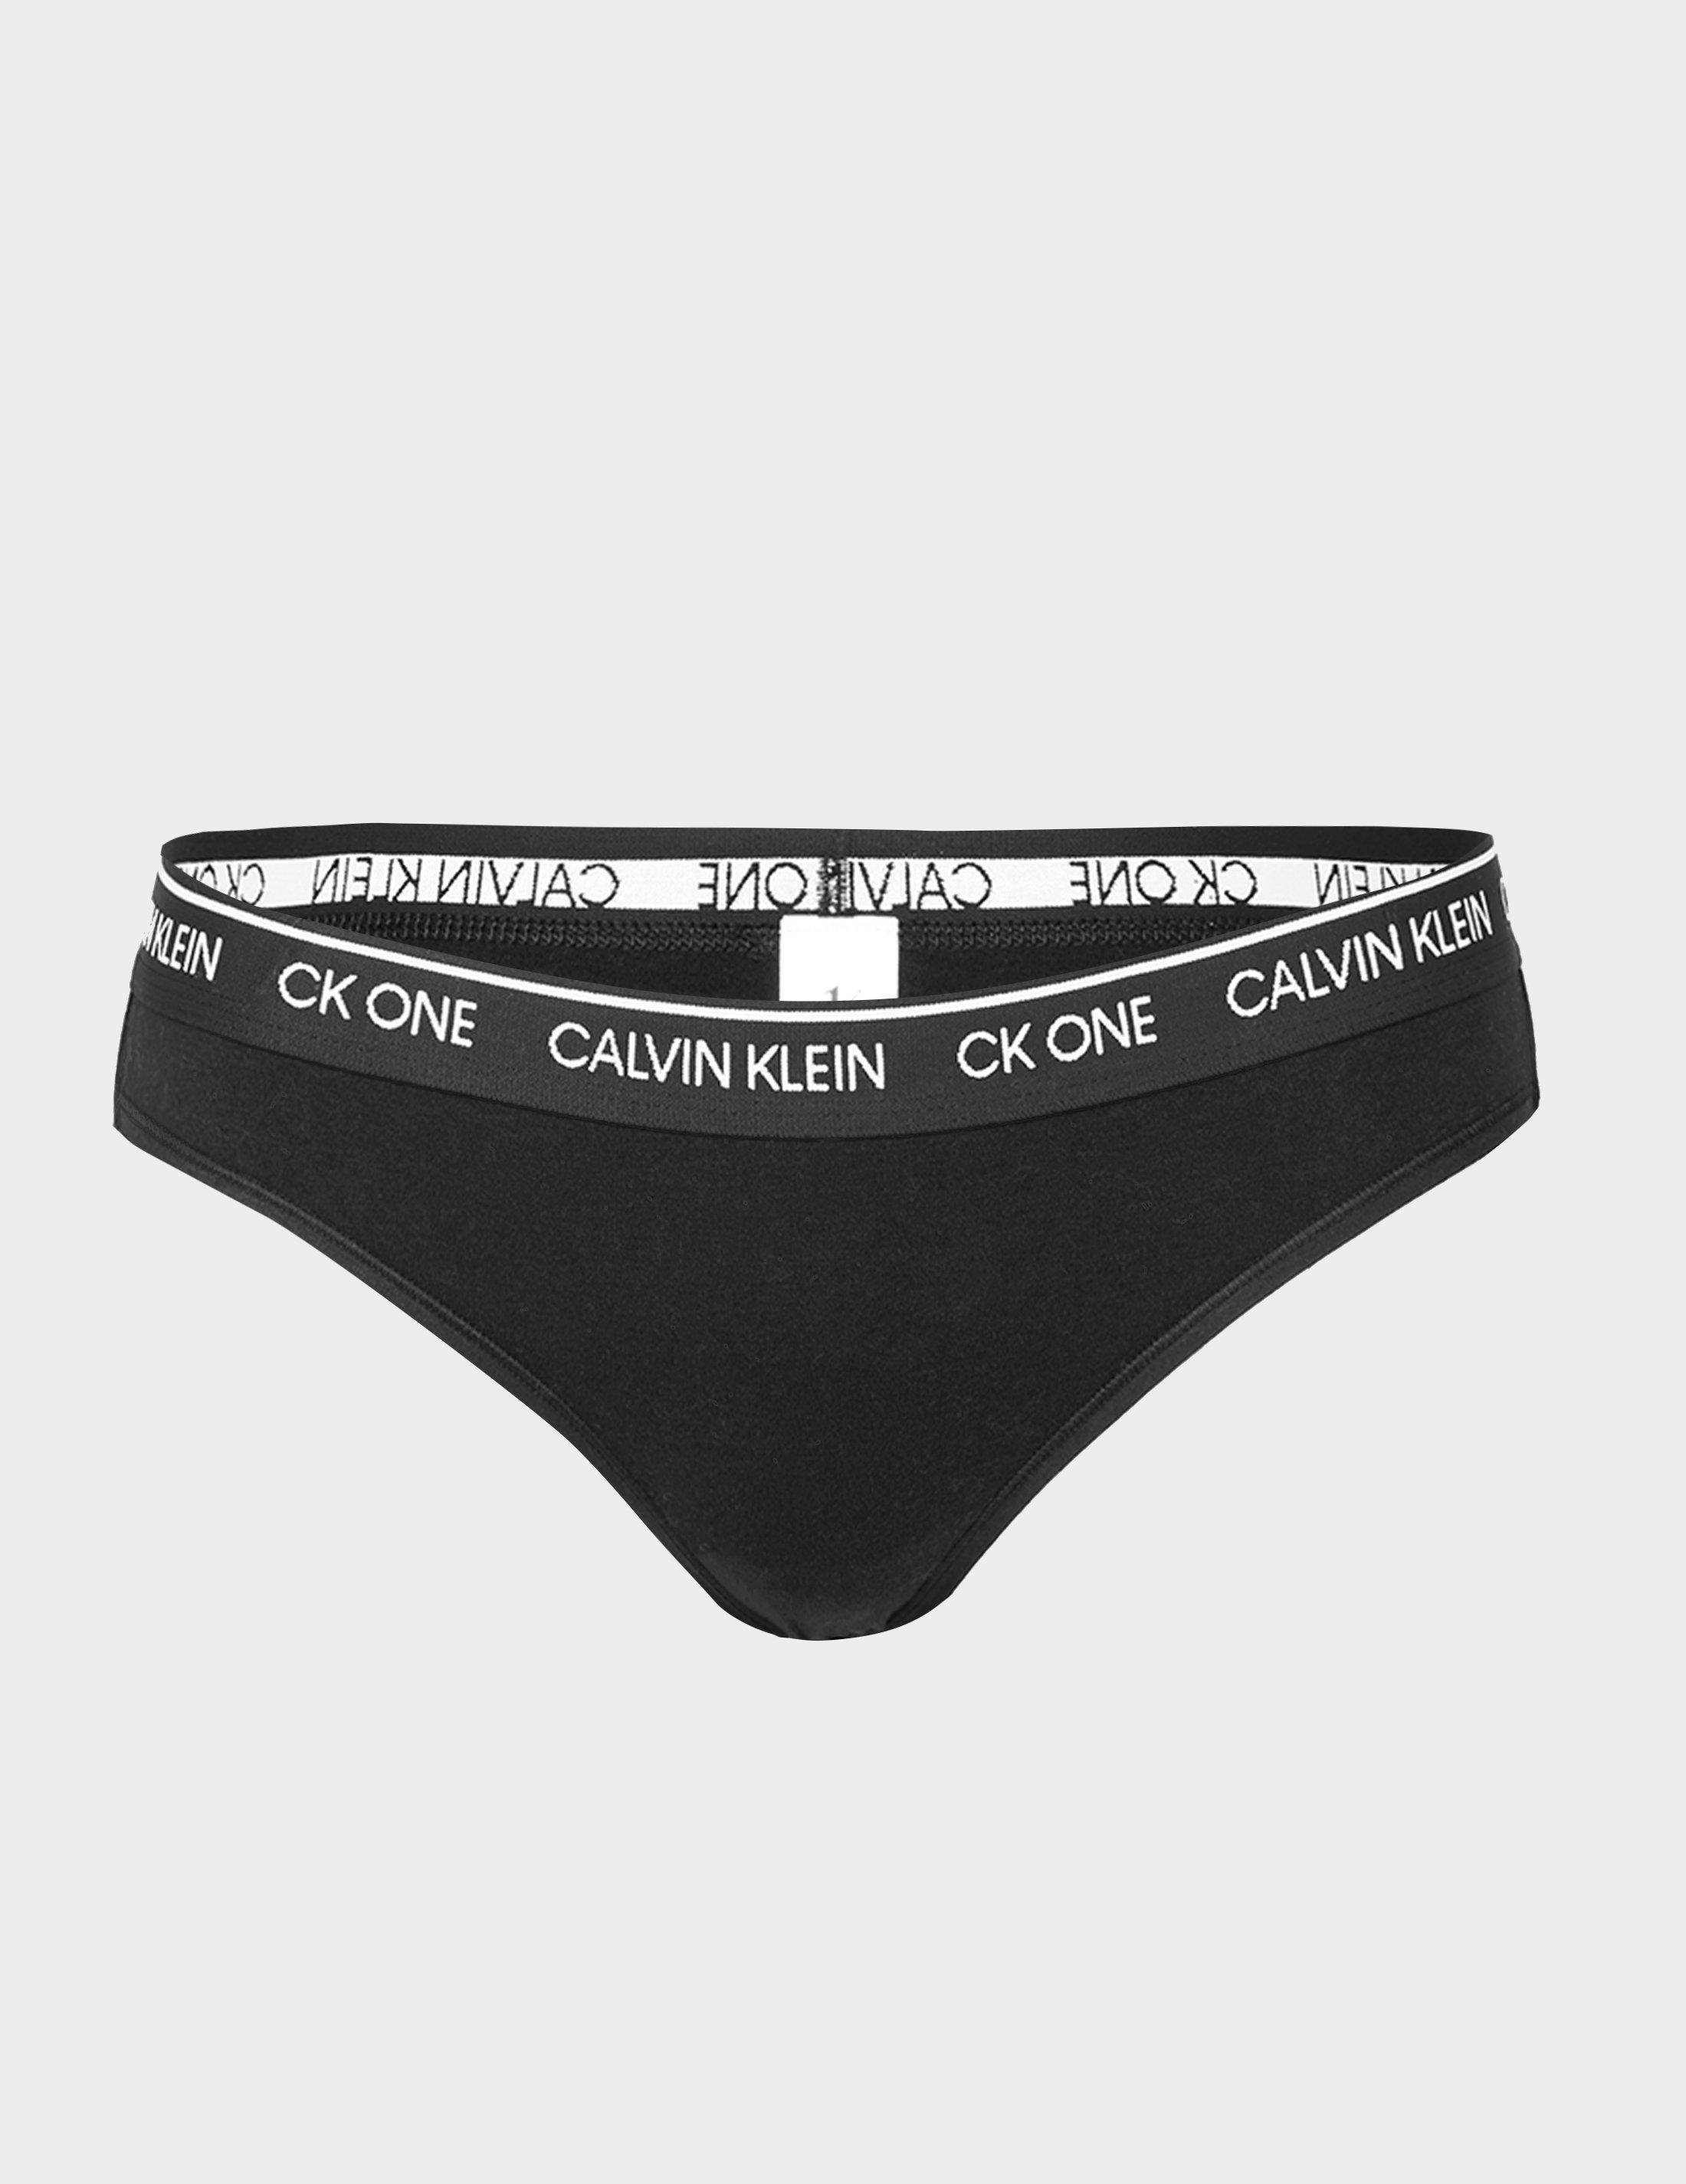 calvin klein underwears